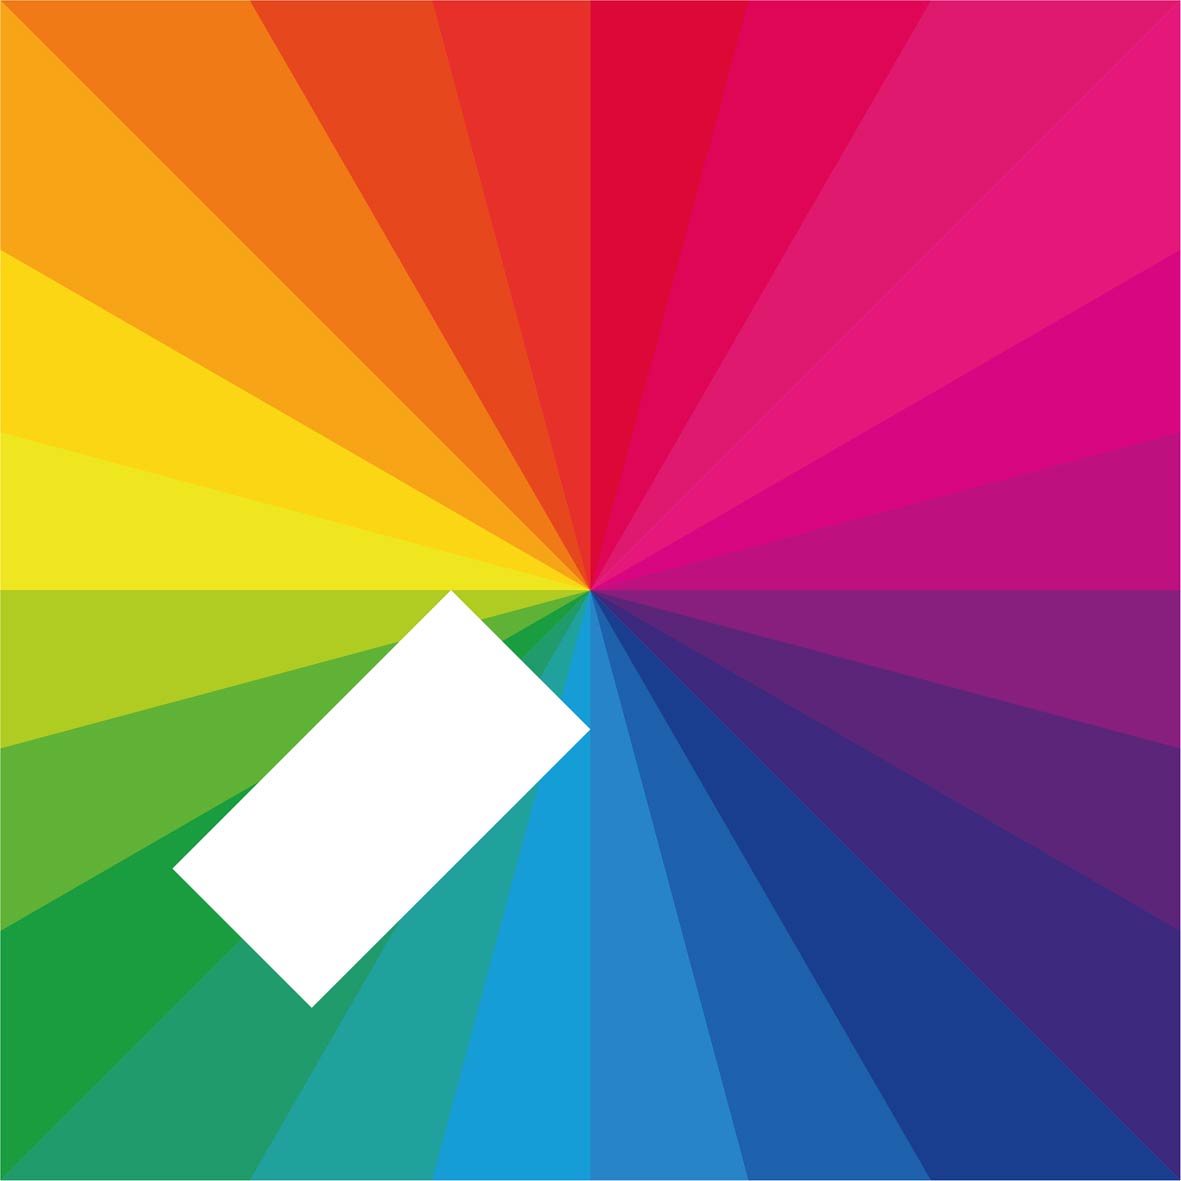 Best of Albums 2015 - Jamie XX, In Color